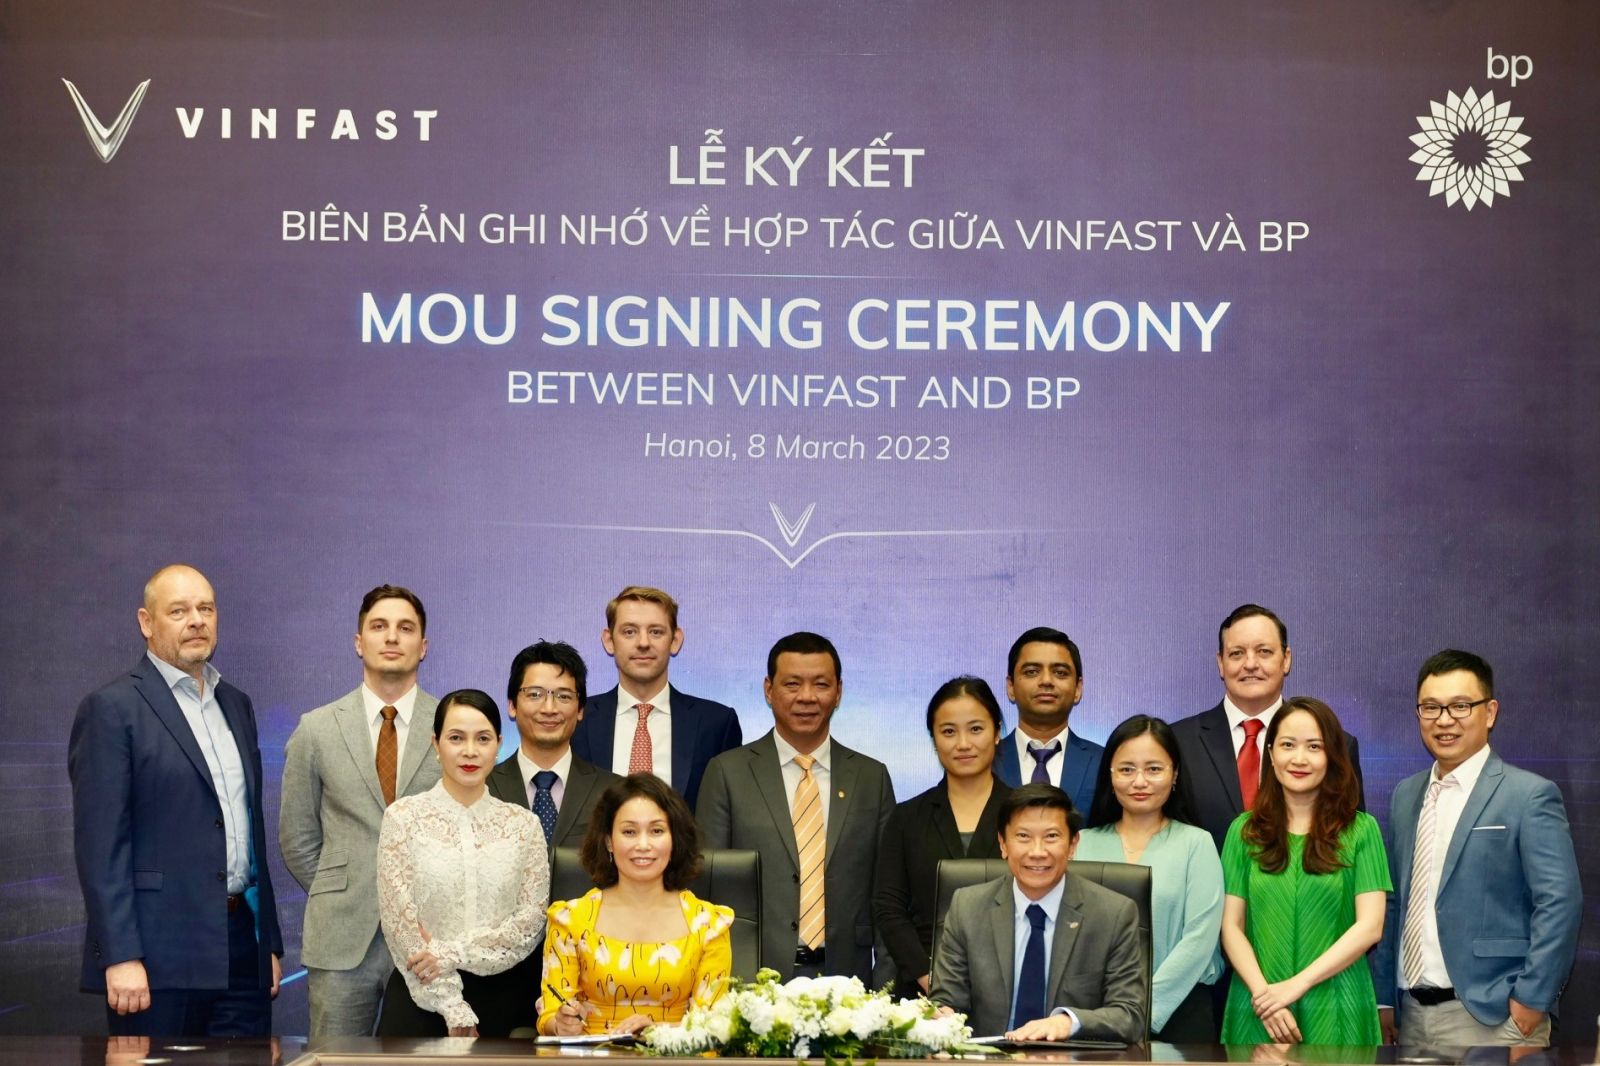 VinFast và BP công bố ký kết Biên bản ghi nhớ (MOU) về việc cung cấp các giải pháp năng lượng và di chuyển điện hóa toàn cầu